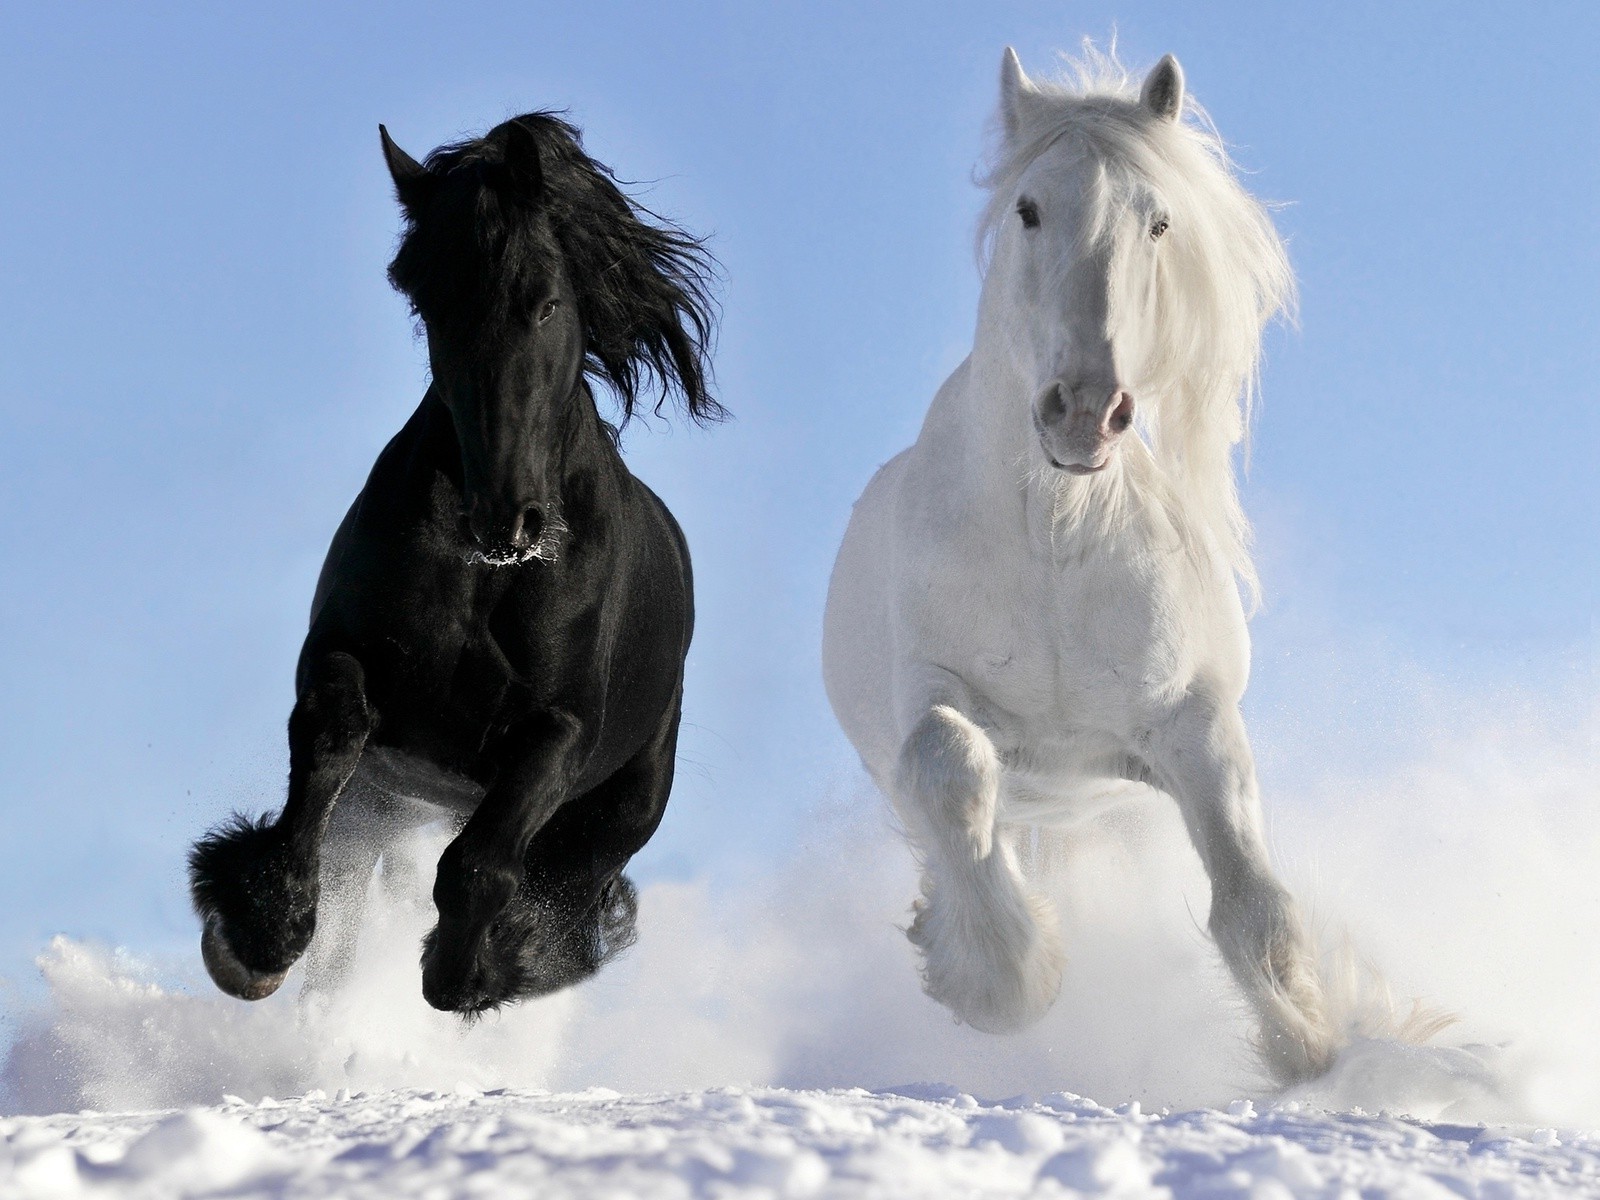 лошади конница снег млекопитающее зима лошадь маре жеребец конный животное коневодство мане два пони один на открытом воздухе небо действие портрет холодная